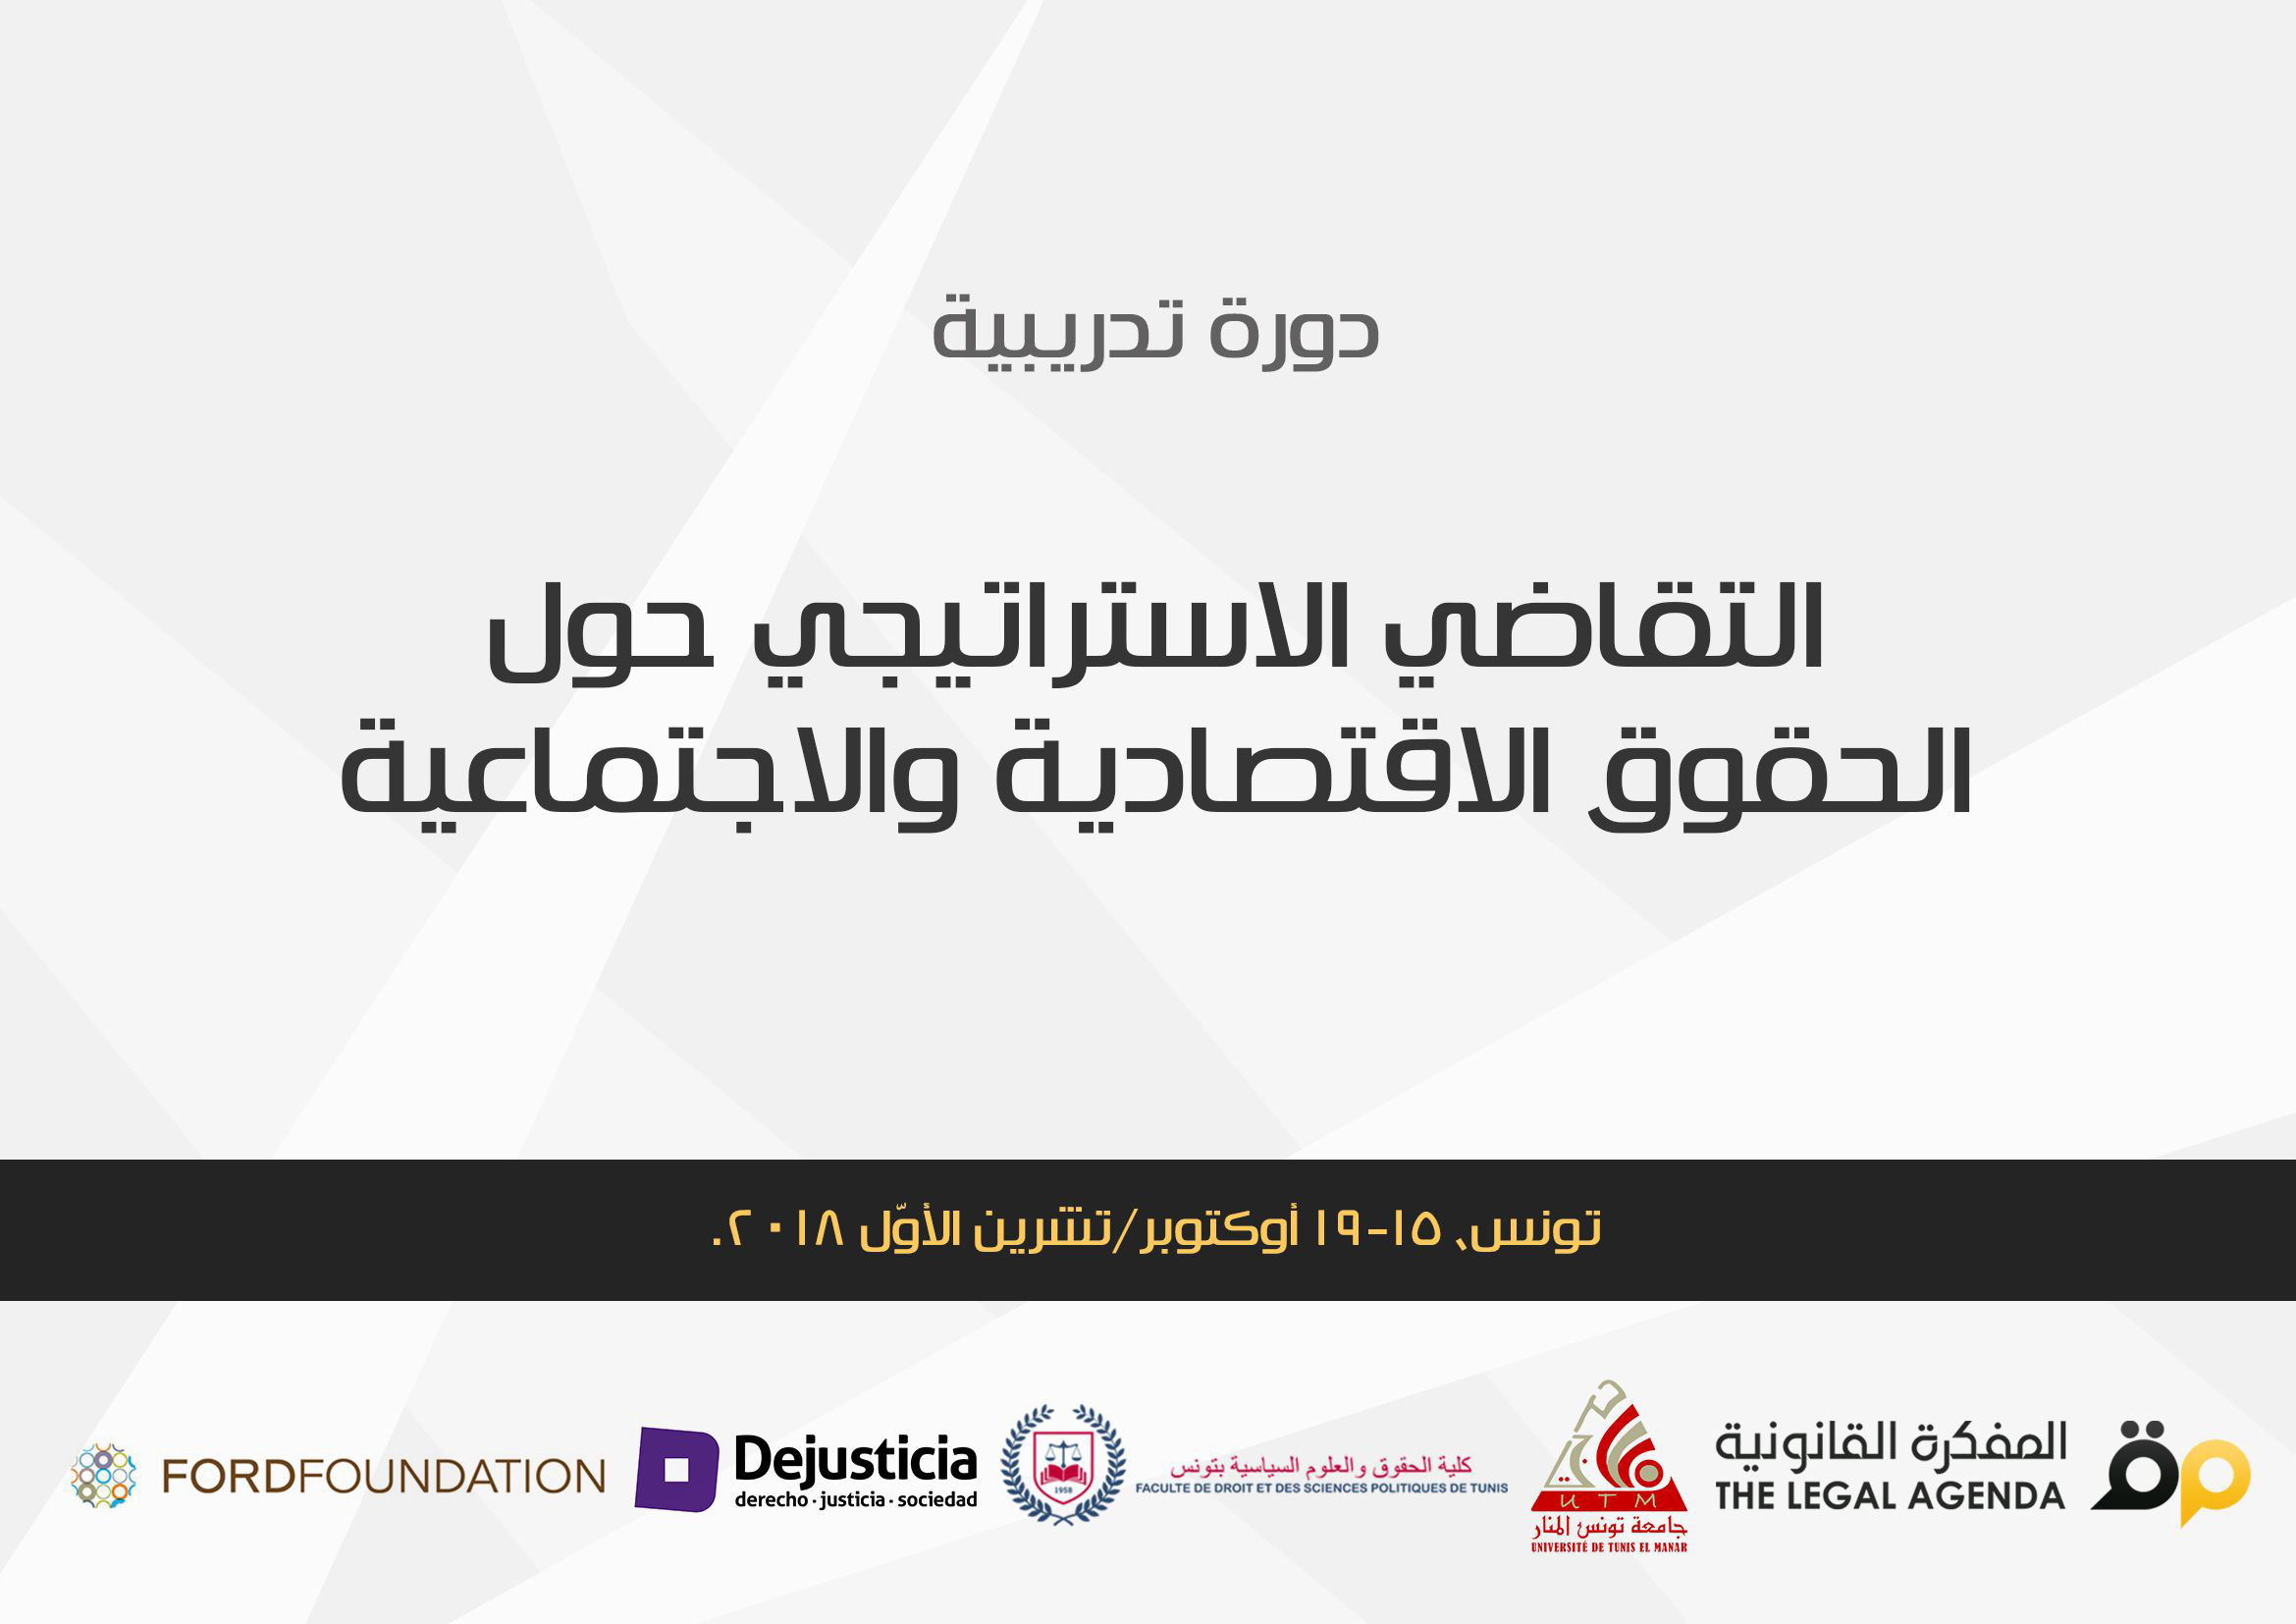 الإعلان عن دورة تدريبية بعنوان “التقاضي الاستراتيجي حول الحقوق الاقتصادية والاجتماعية” في تونس، 15-19 أوكتوبر/تشرين الأوّل 2018